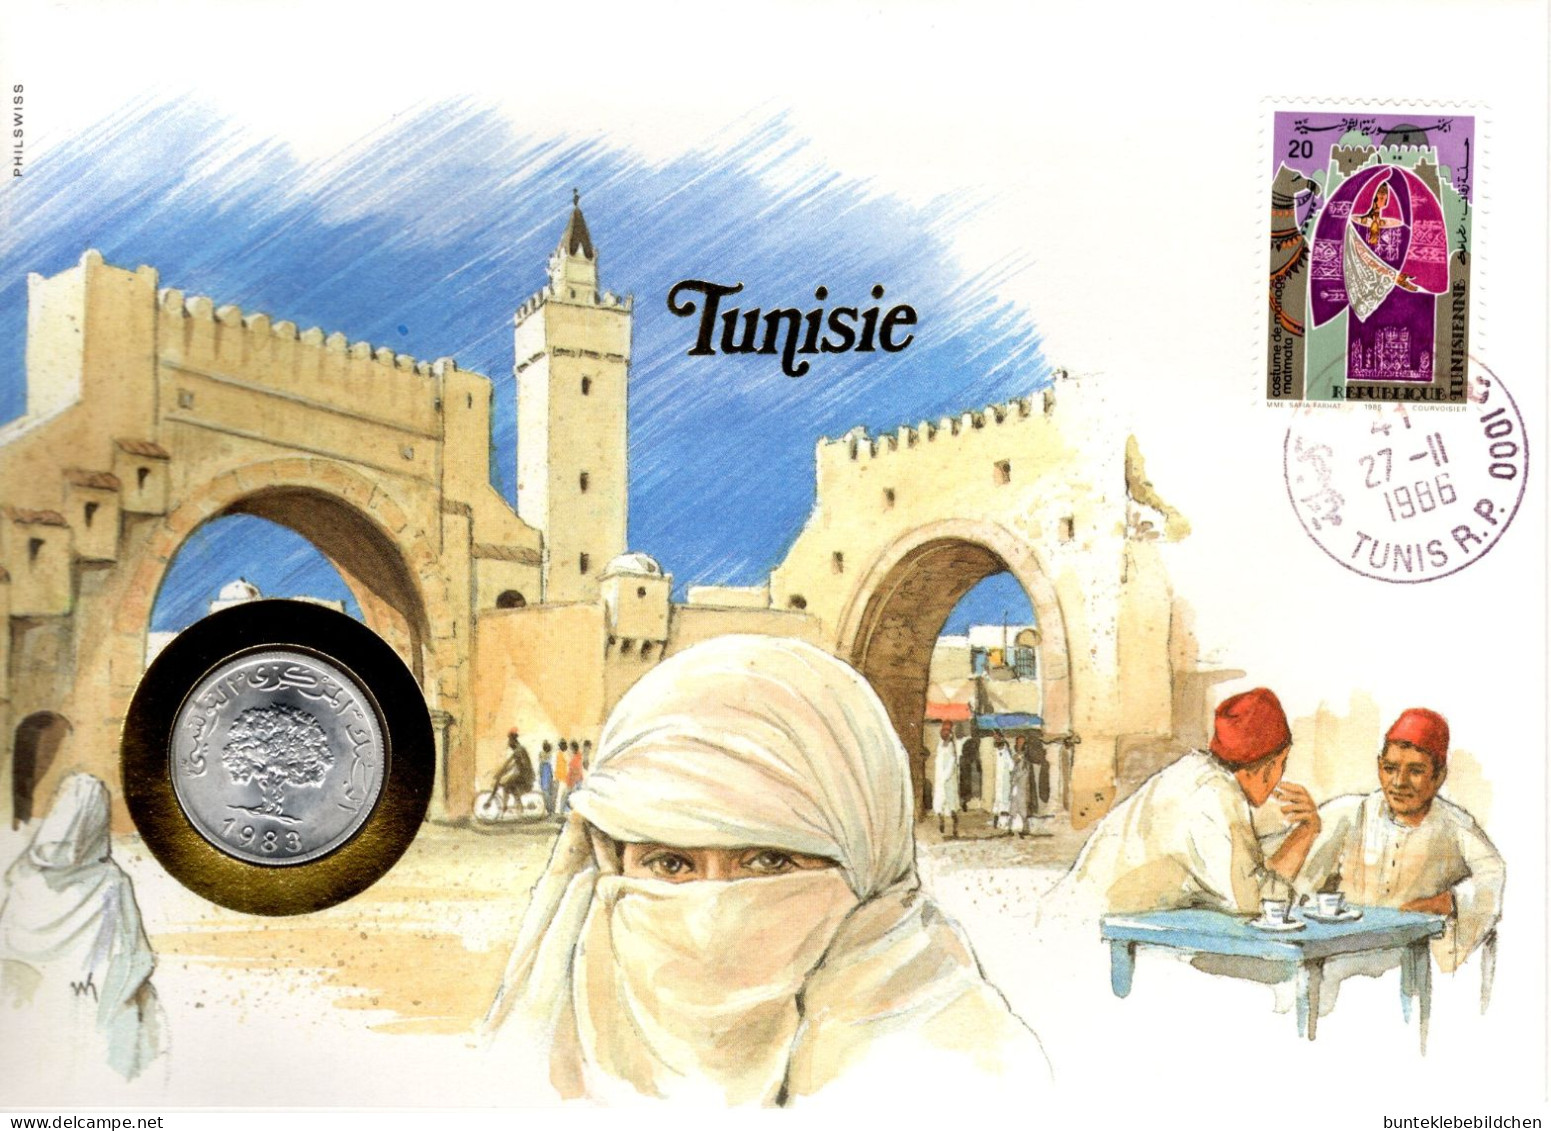 Numisbrief - Tunesien - Tunisie